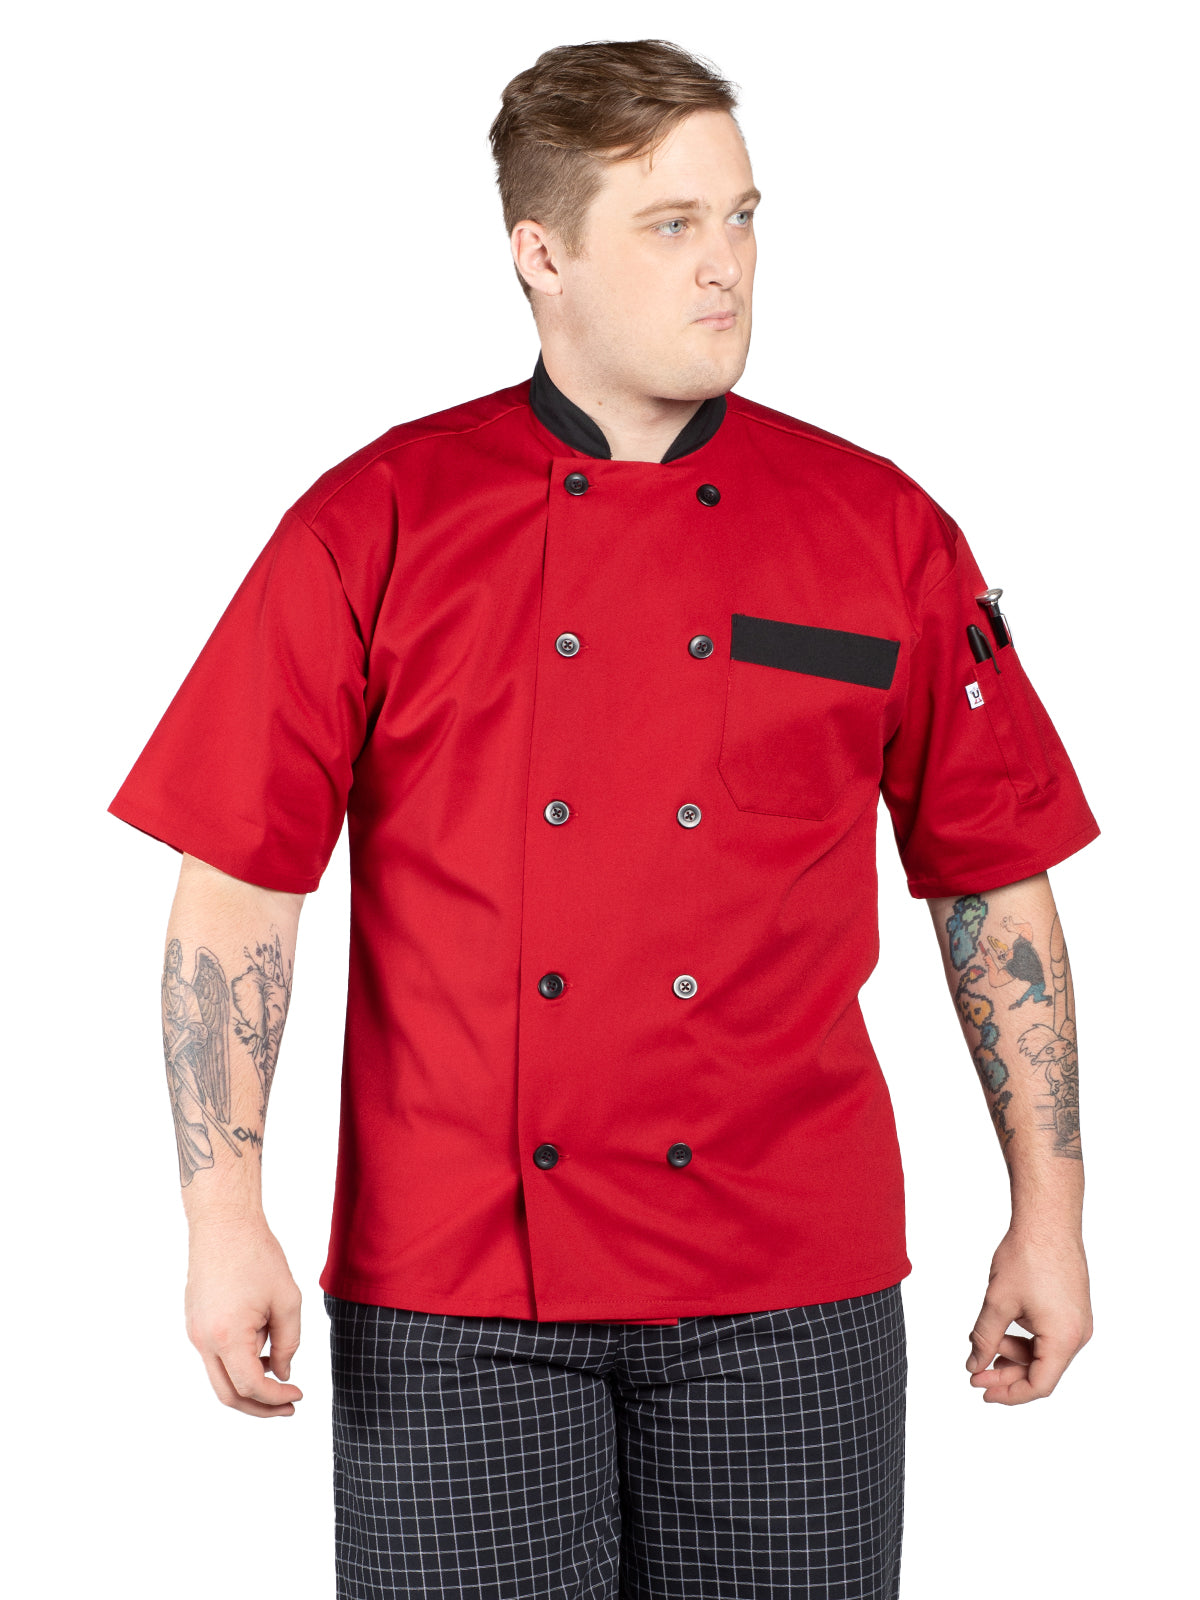 Unisex Chef Coat - 0423 - Red